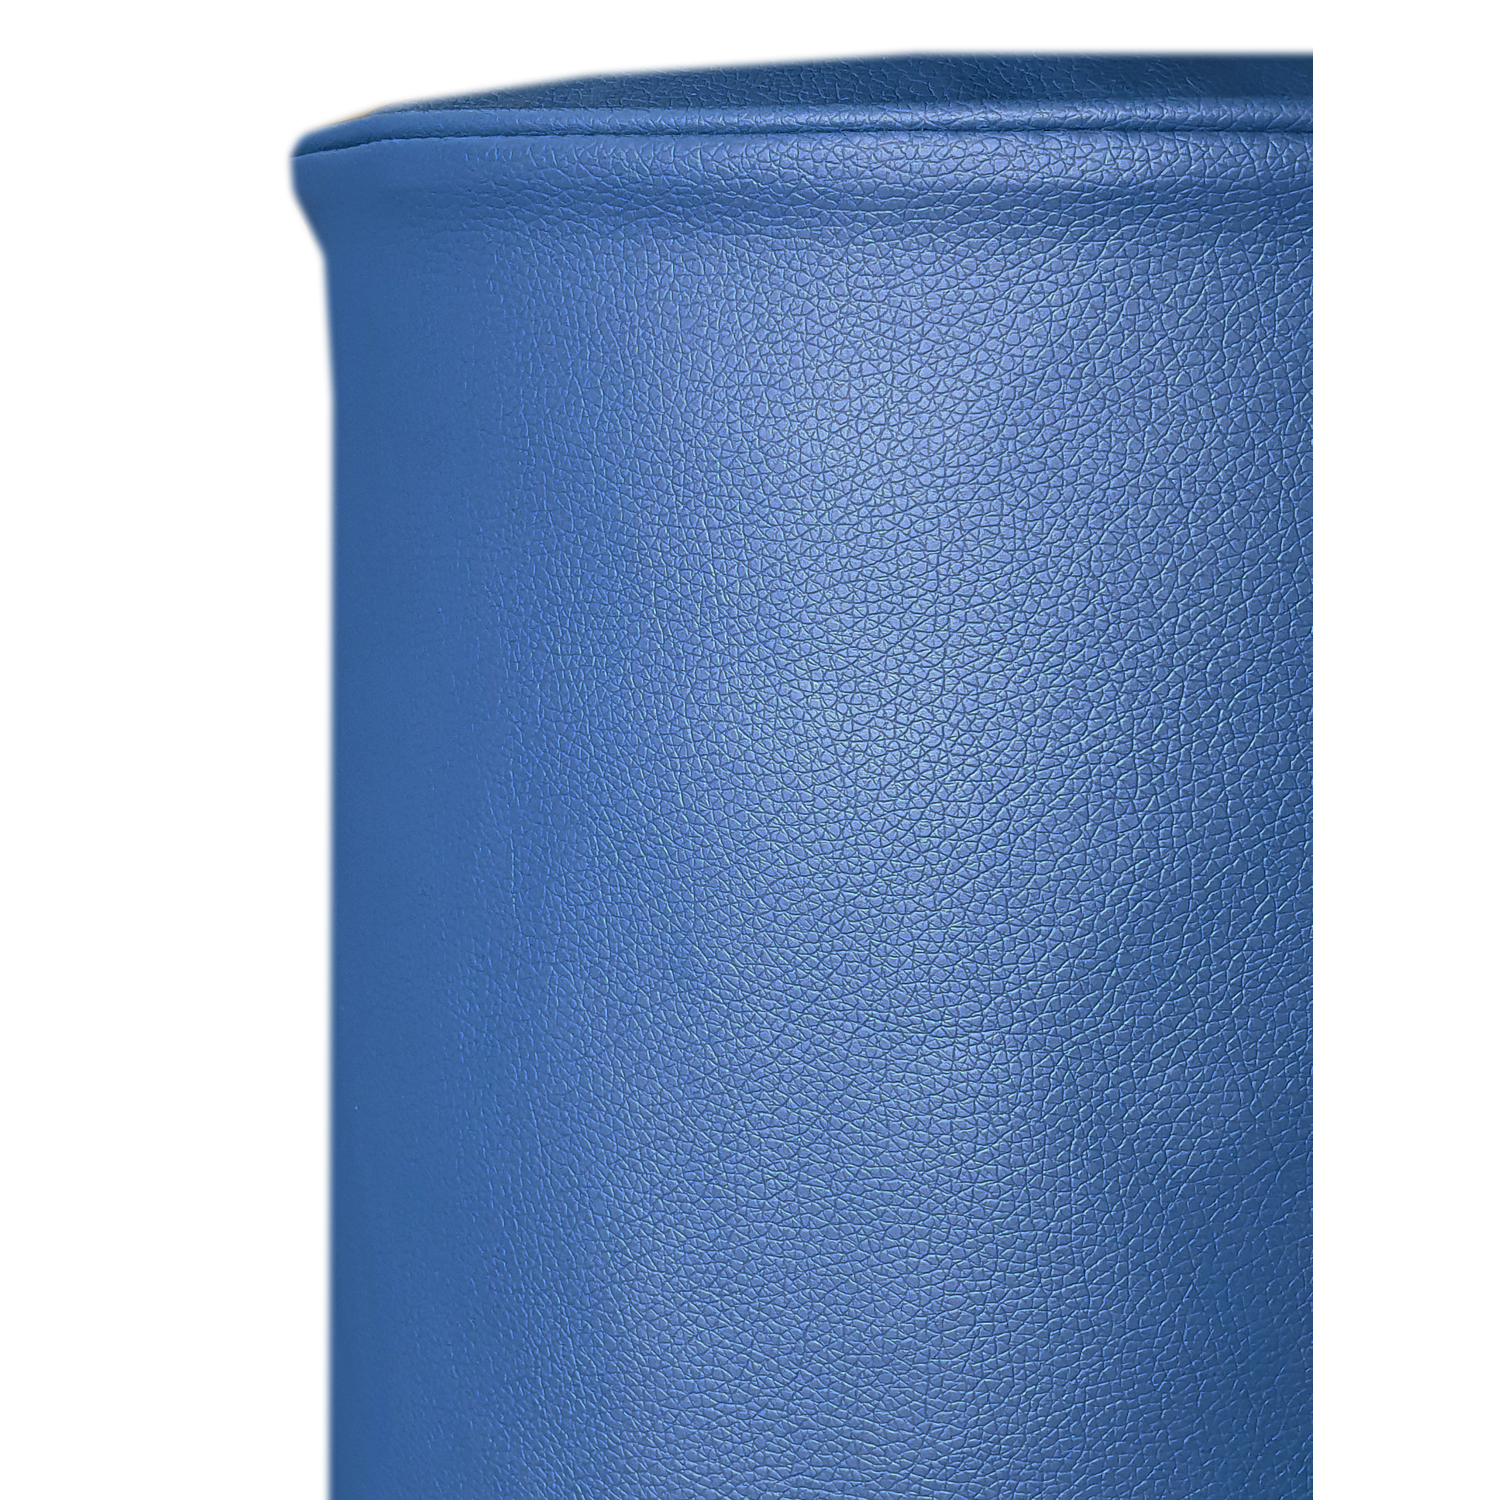 Чехол на бутыль 19л Coolpaq Leather Blue - фото 6